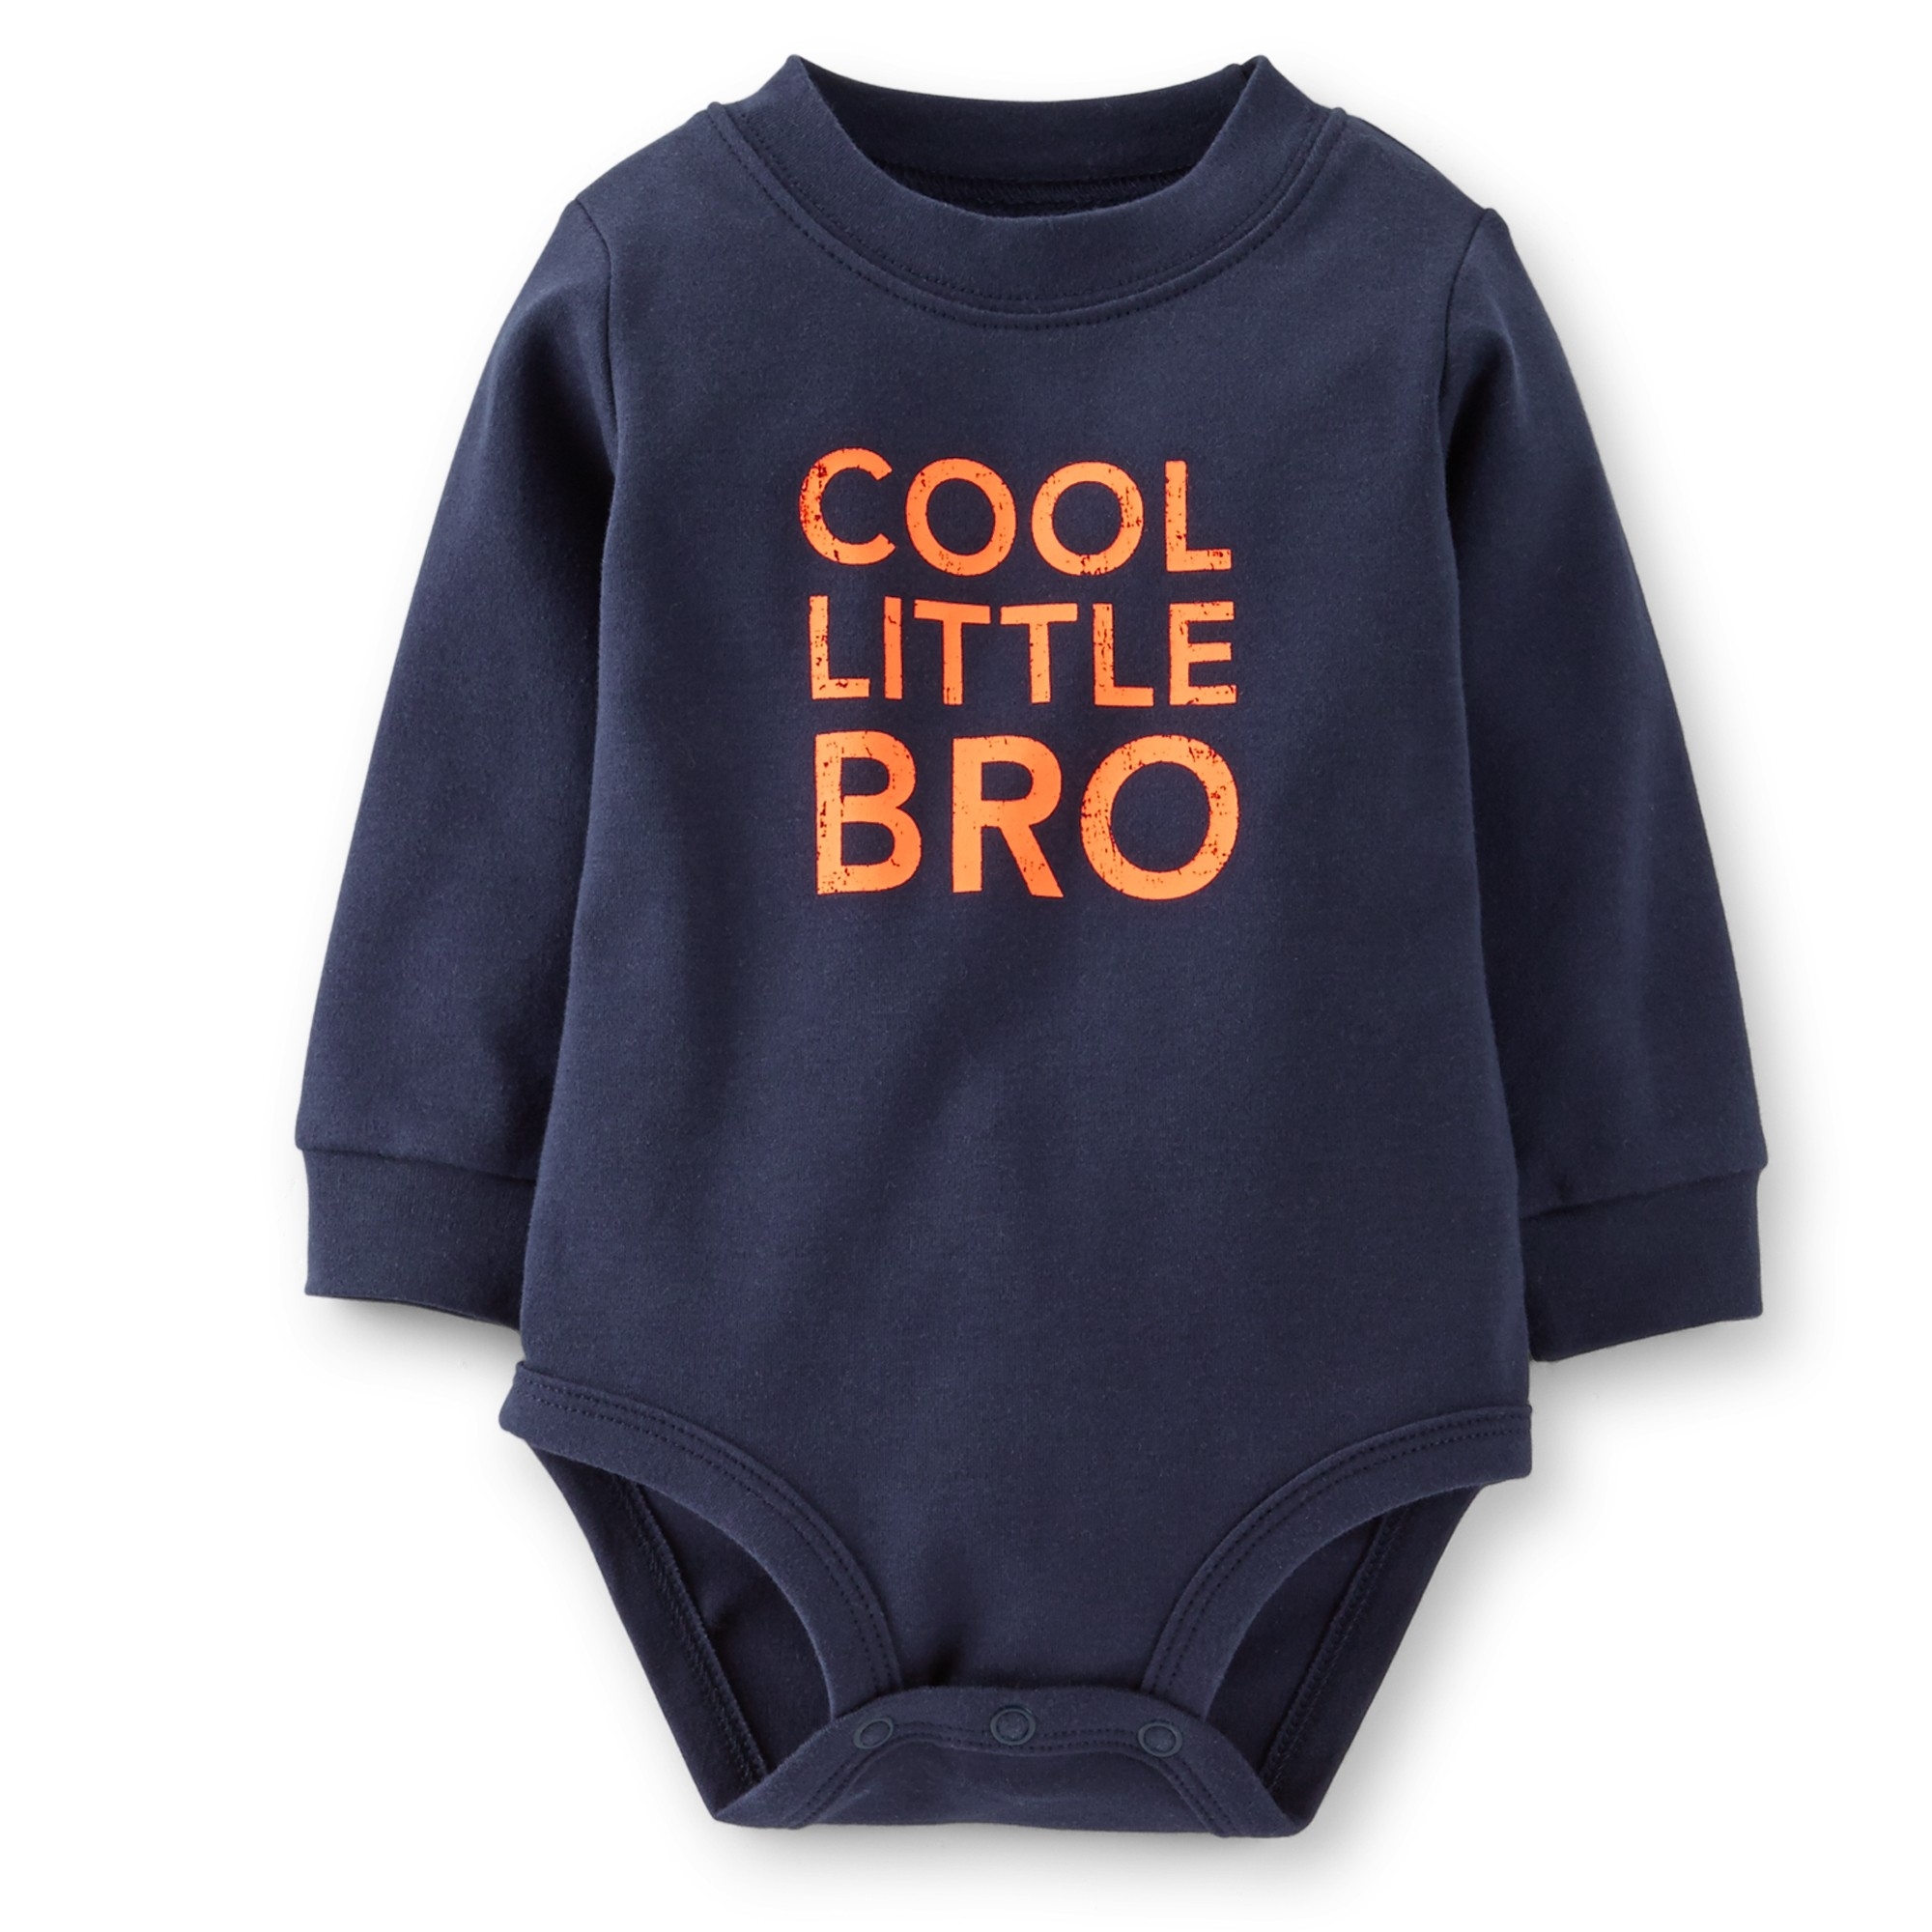 Carter's Newborn Boy's Long-Sleeve Bodysuit - Cool Little Bro